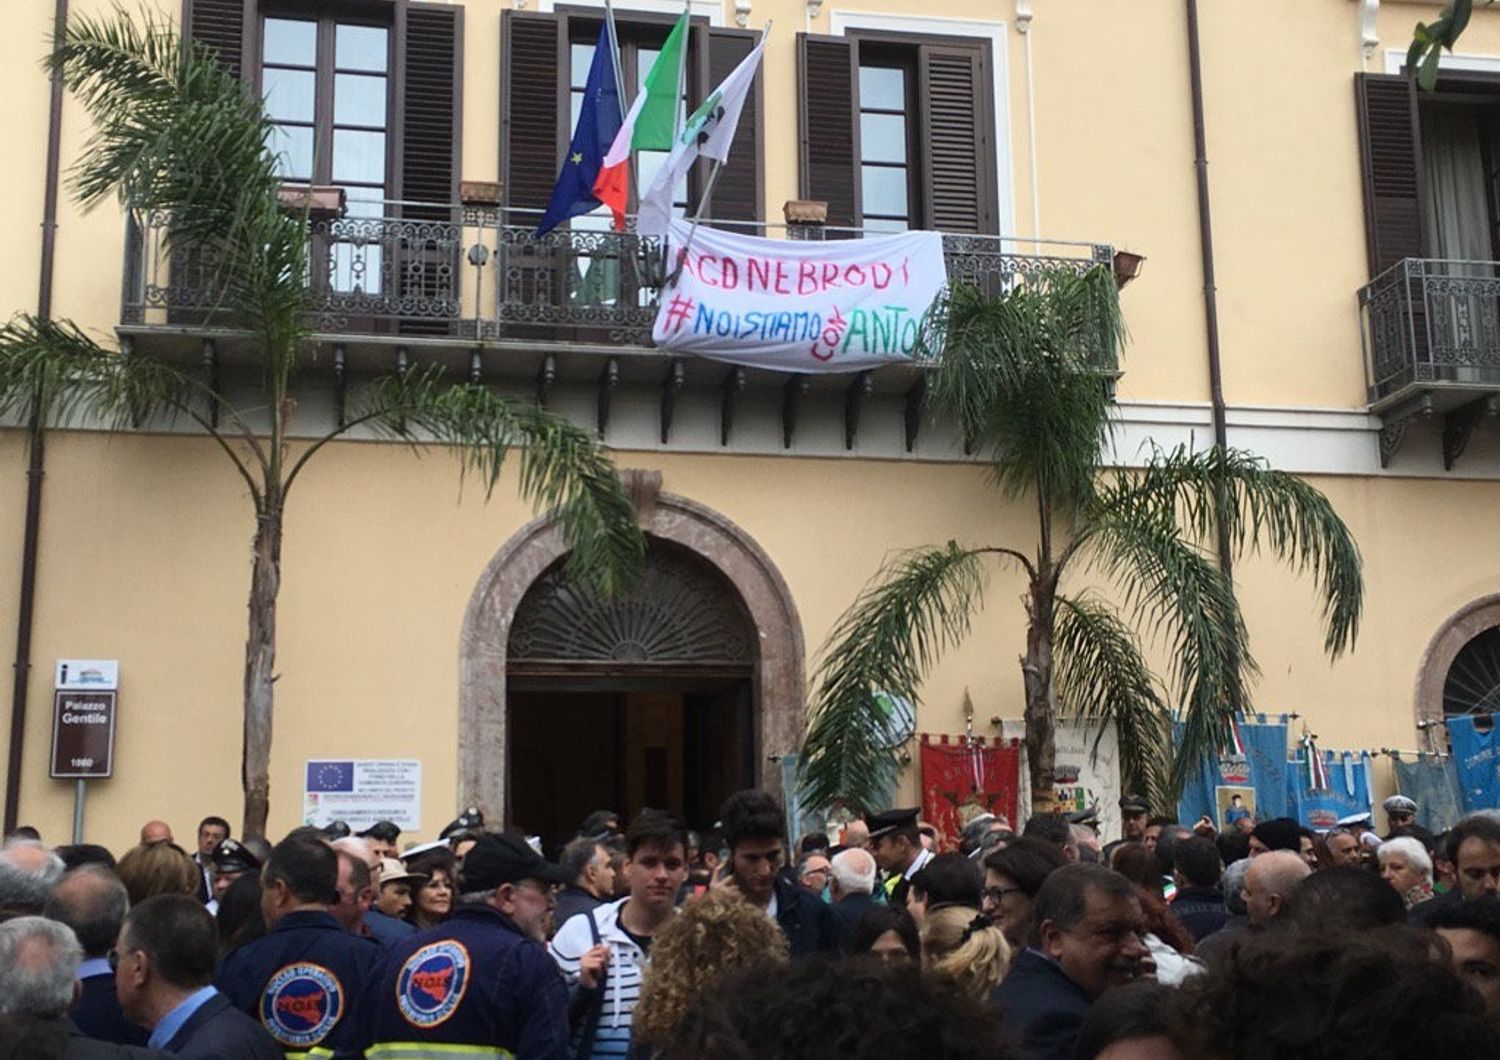 &nbsp;Parco dei Nebrodi manifestazione contro la mafia Giuseppe Antoci - twitter